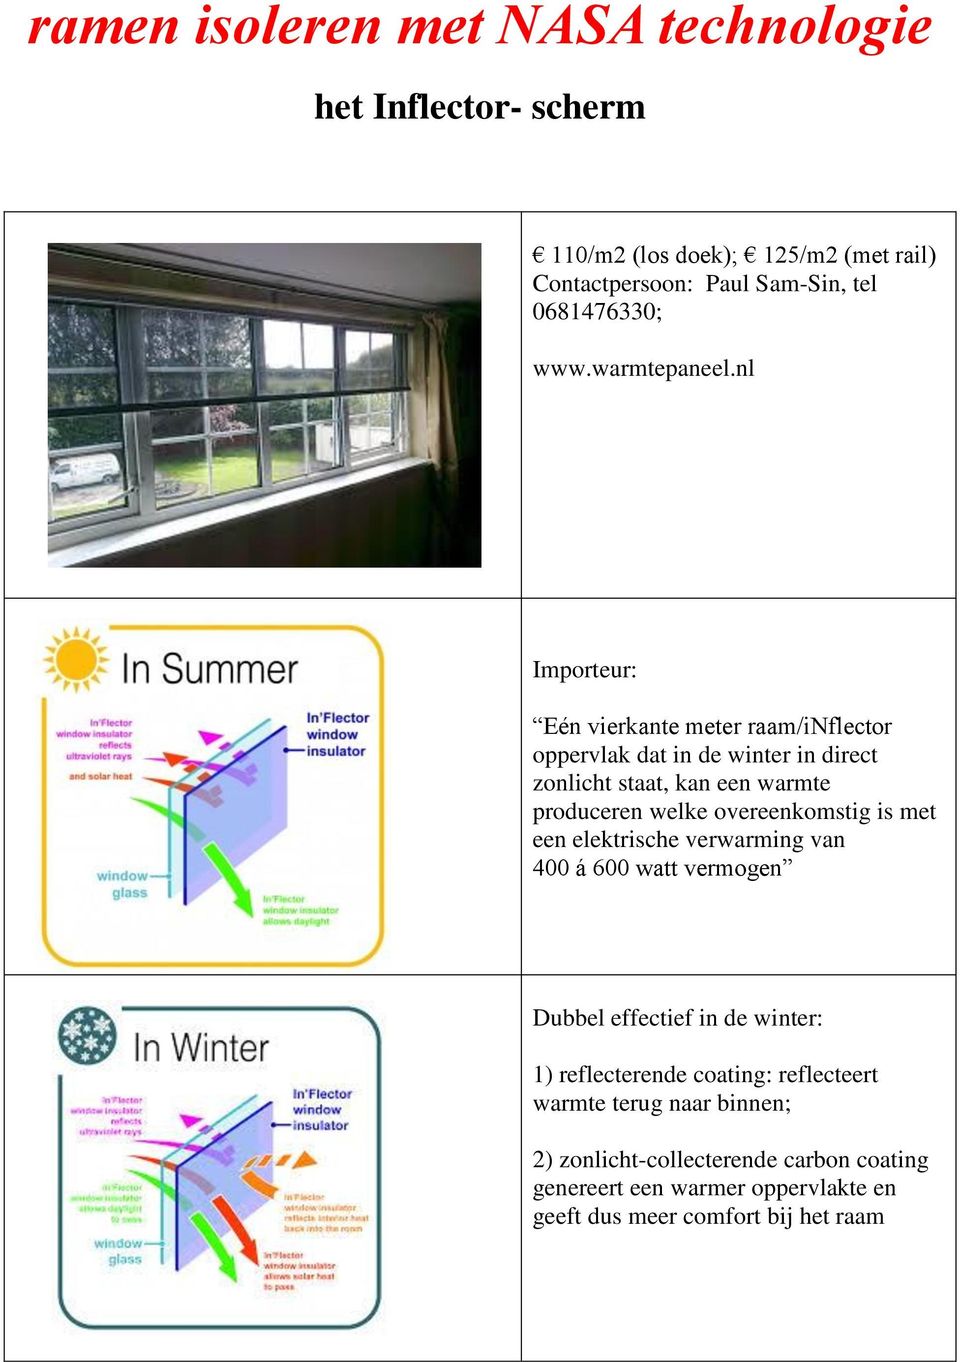 nl Importeur: Eén vierkante meter raam/inflector oppervlak dat in de winter in direct zonlicht staat, kan een warmte produceren welke